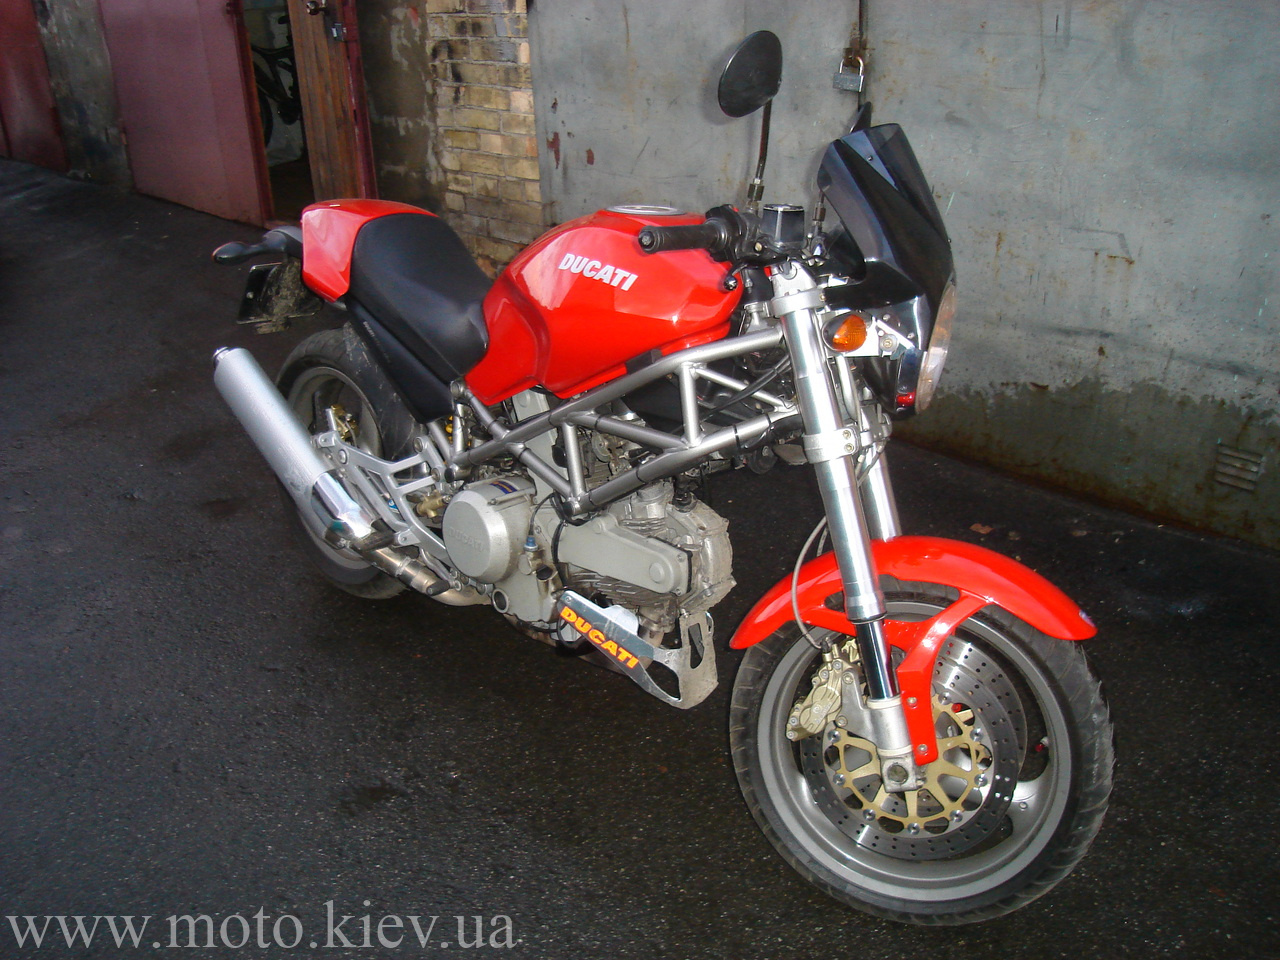  Ducati Monster 400 6000 USD   